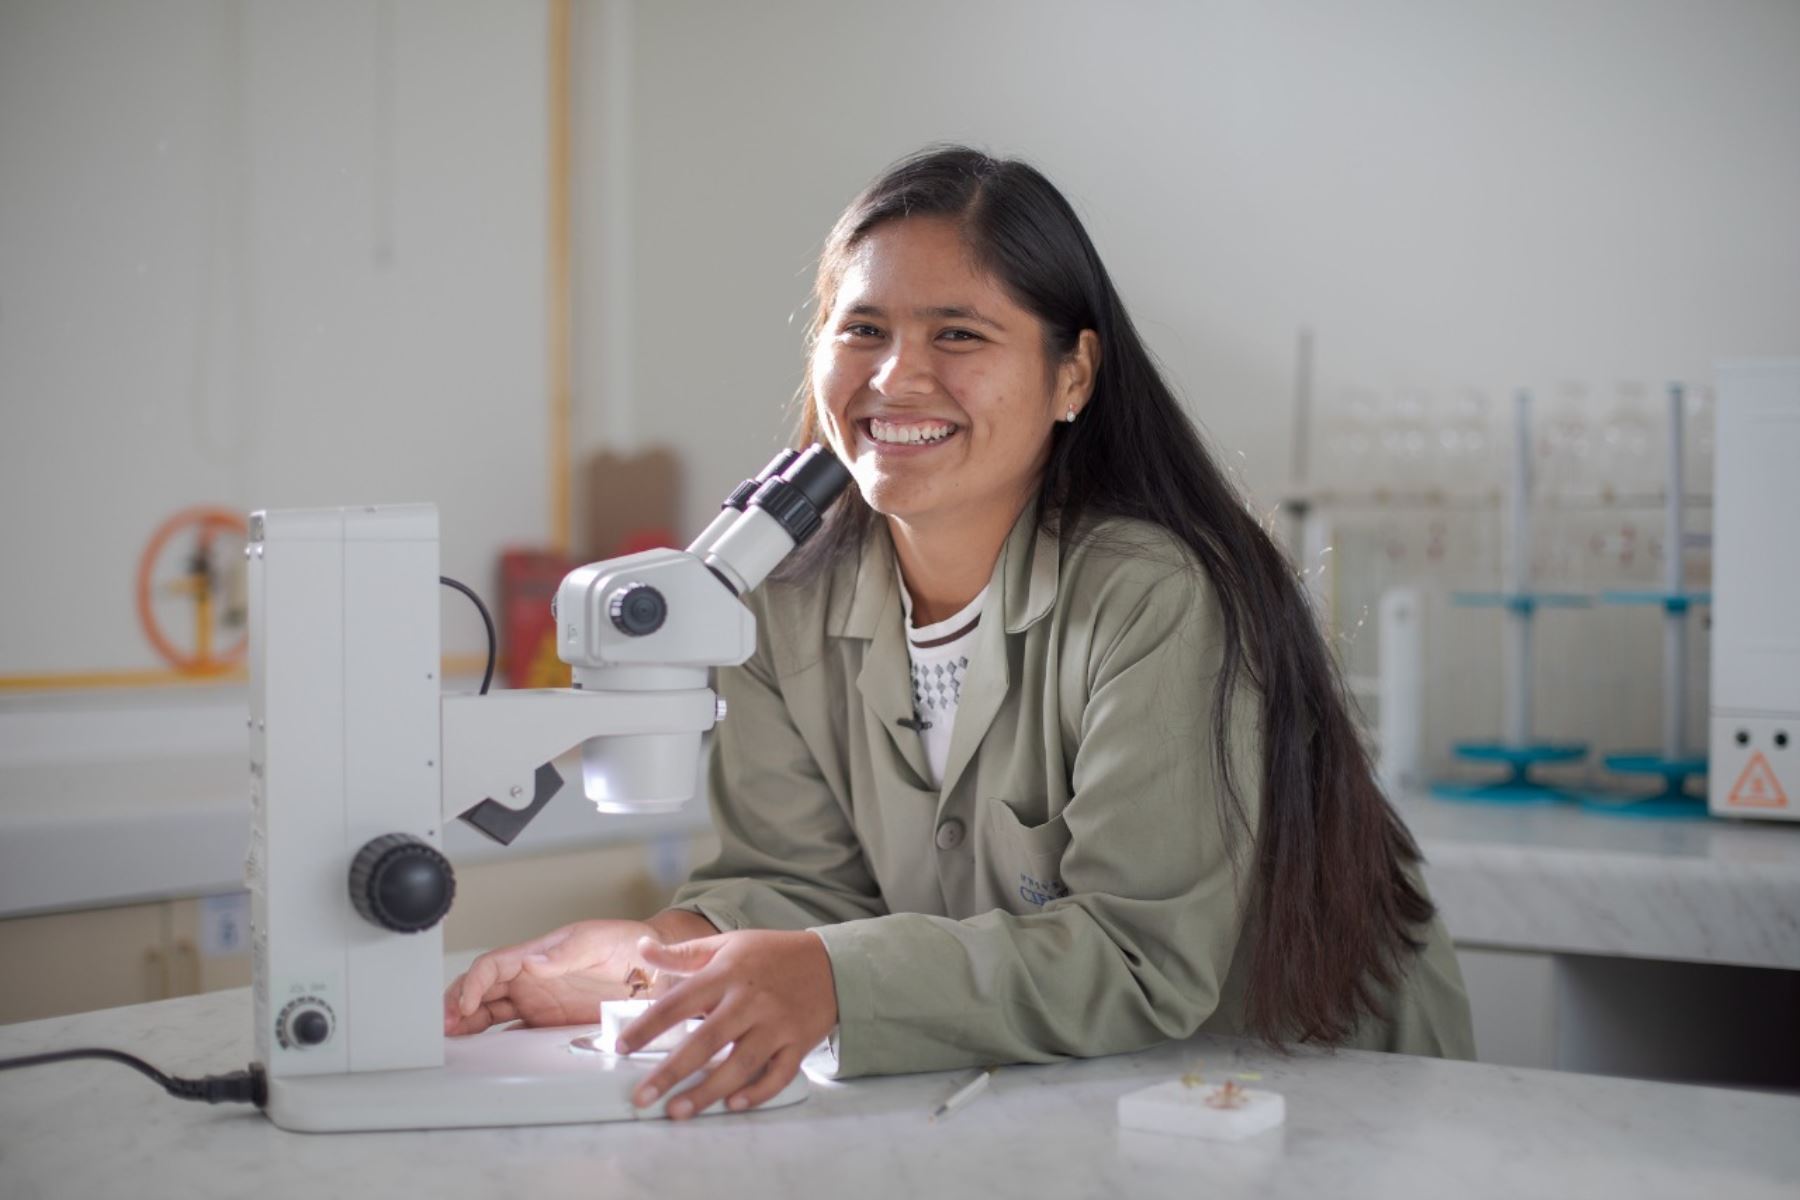 STEM para Todas busca incrementar la participación de mujeres y reducir la brecha de género en las áreas de Ciencia, Tecnología, Ingeniería y Matemáticas